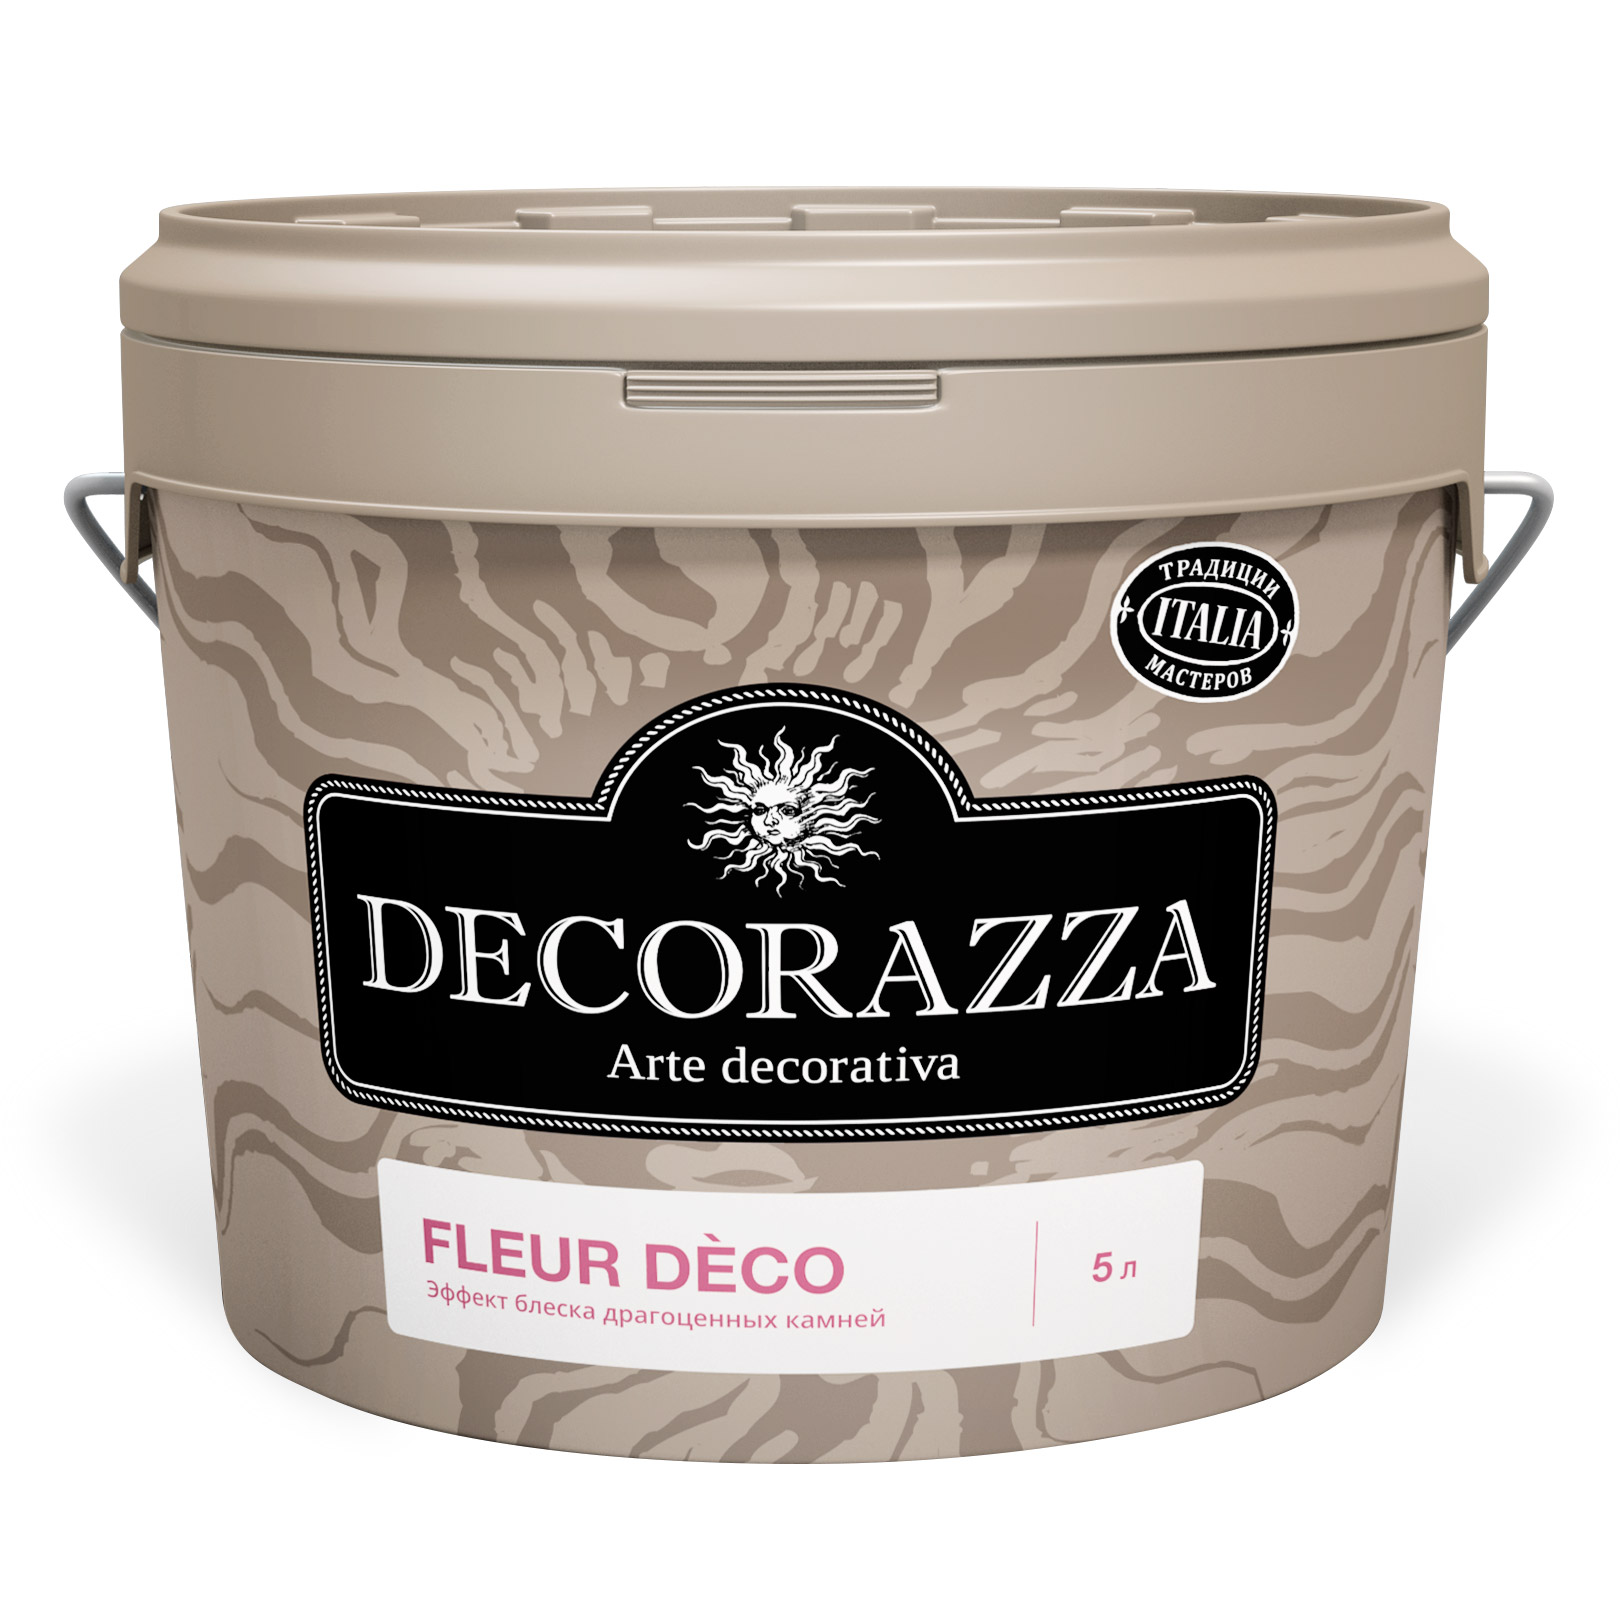 Лак Decorazza Dec Fleur Deco Rubin 1 кг (DFD03- 1) лак decorazza perla vernici argento 1 л dplv001 10